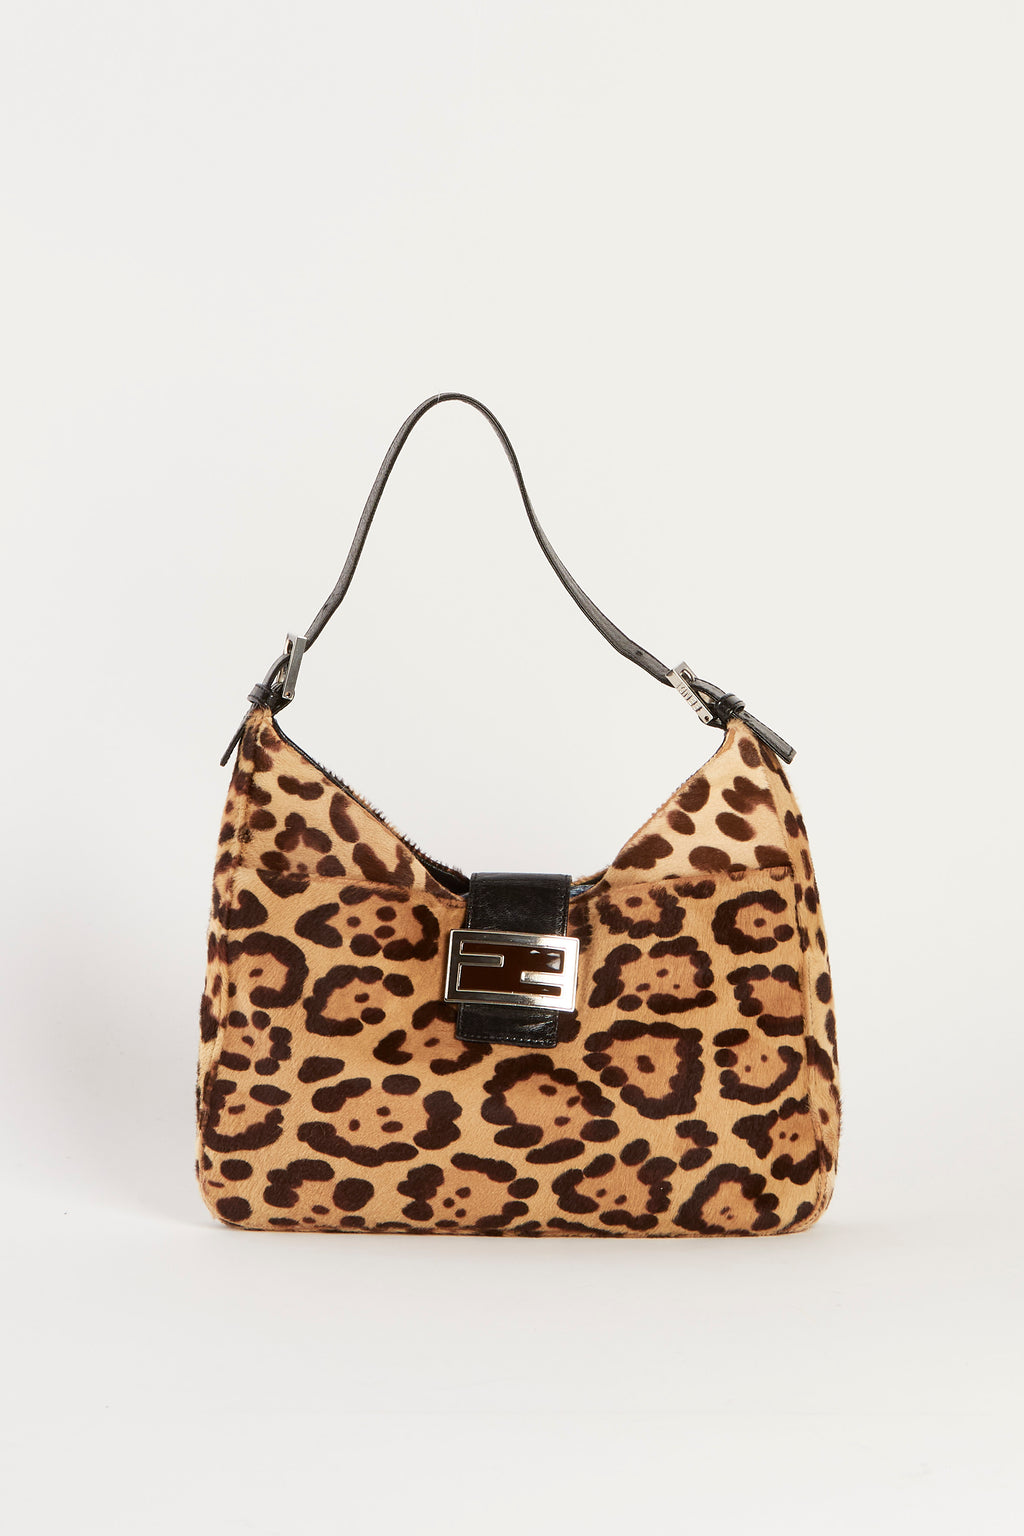 Vintage Fendi Leopard Print Pony Hair Shoulder Bag